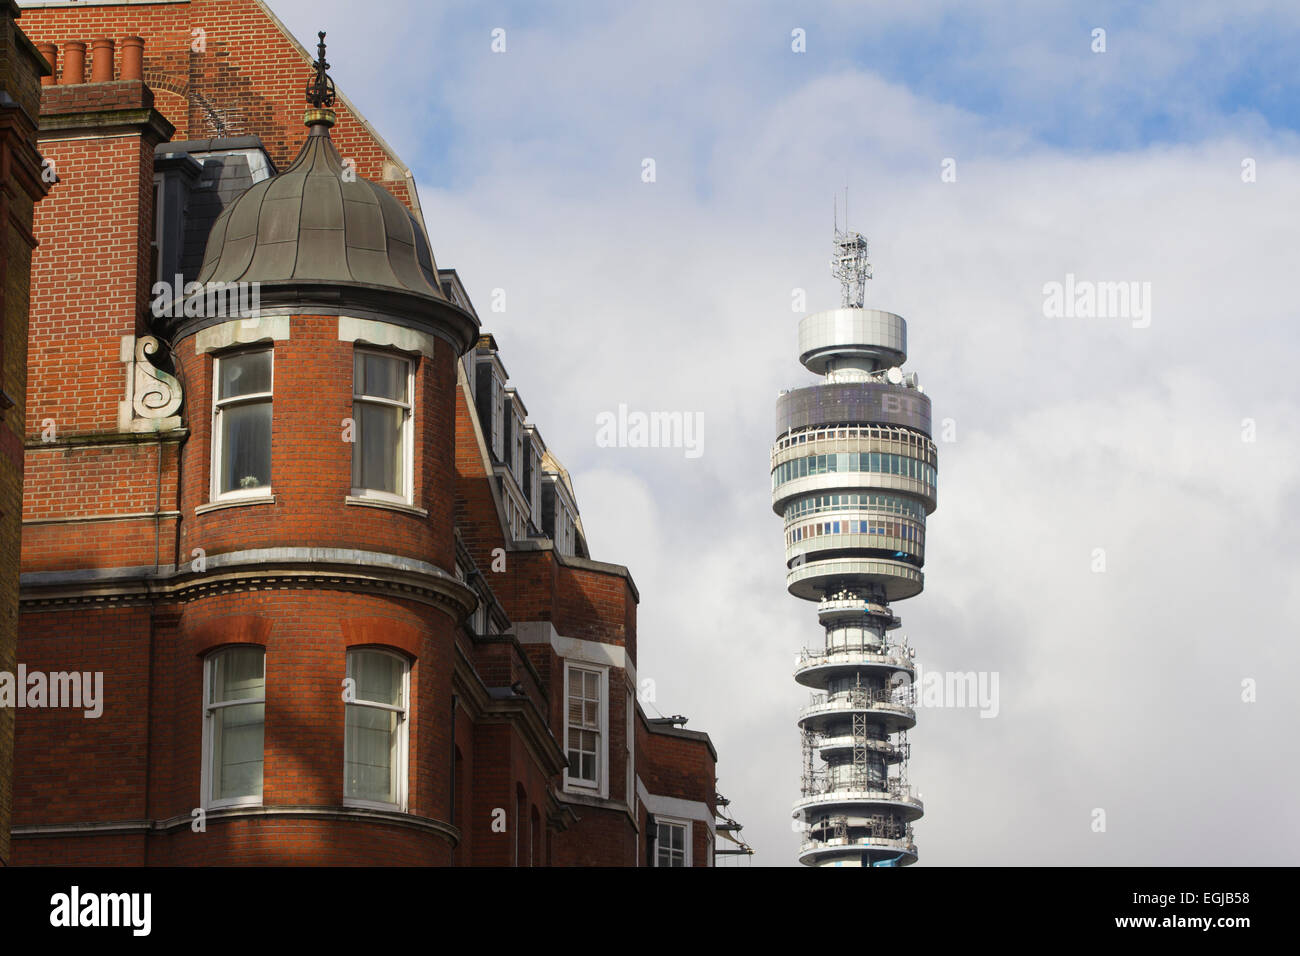 BT Tower situé dans Fitzrovia, Londres, administré par BT Group, Centre de Londres, Angleterre, RU Banque D'Images